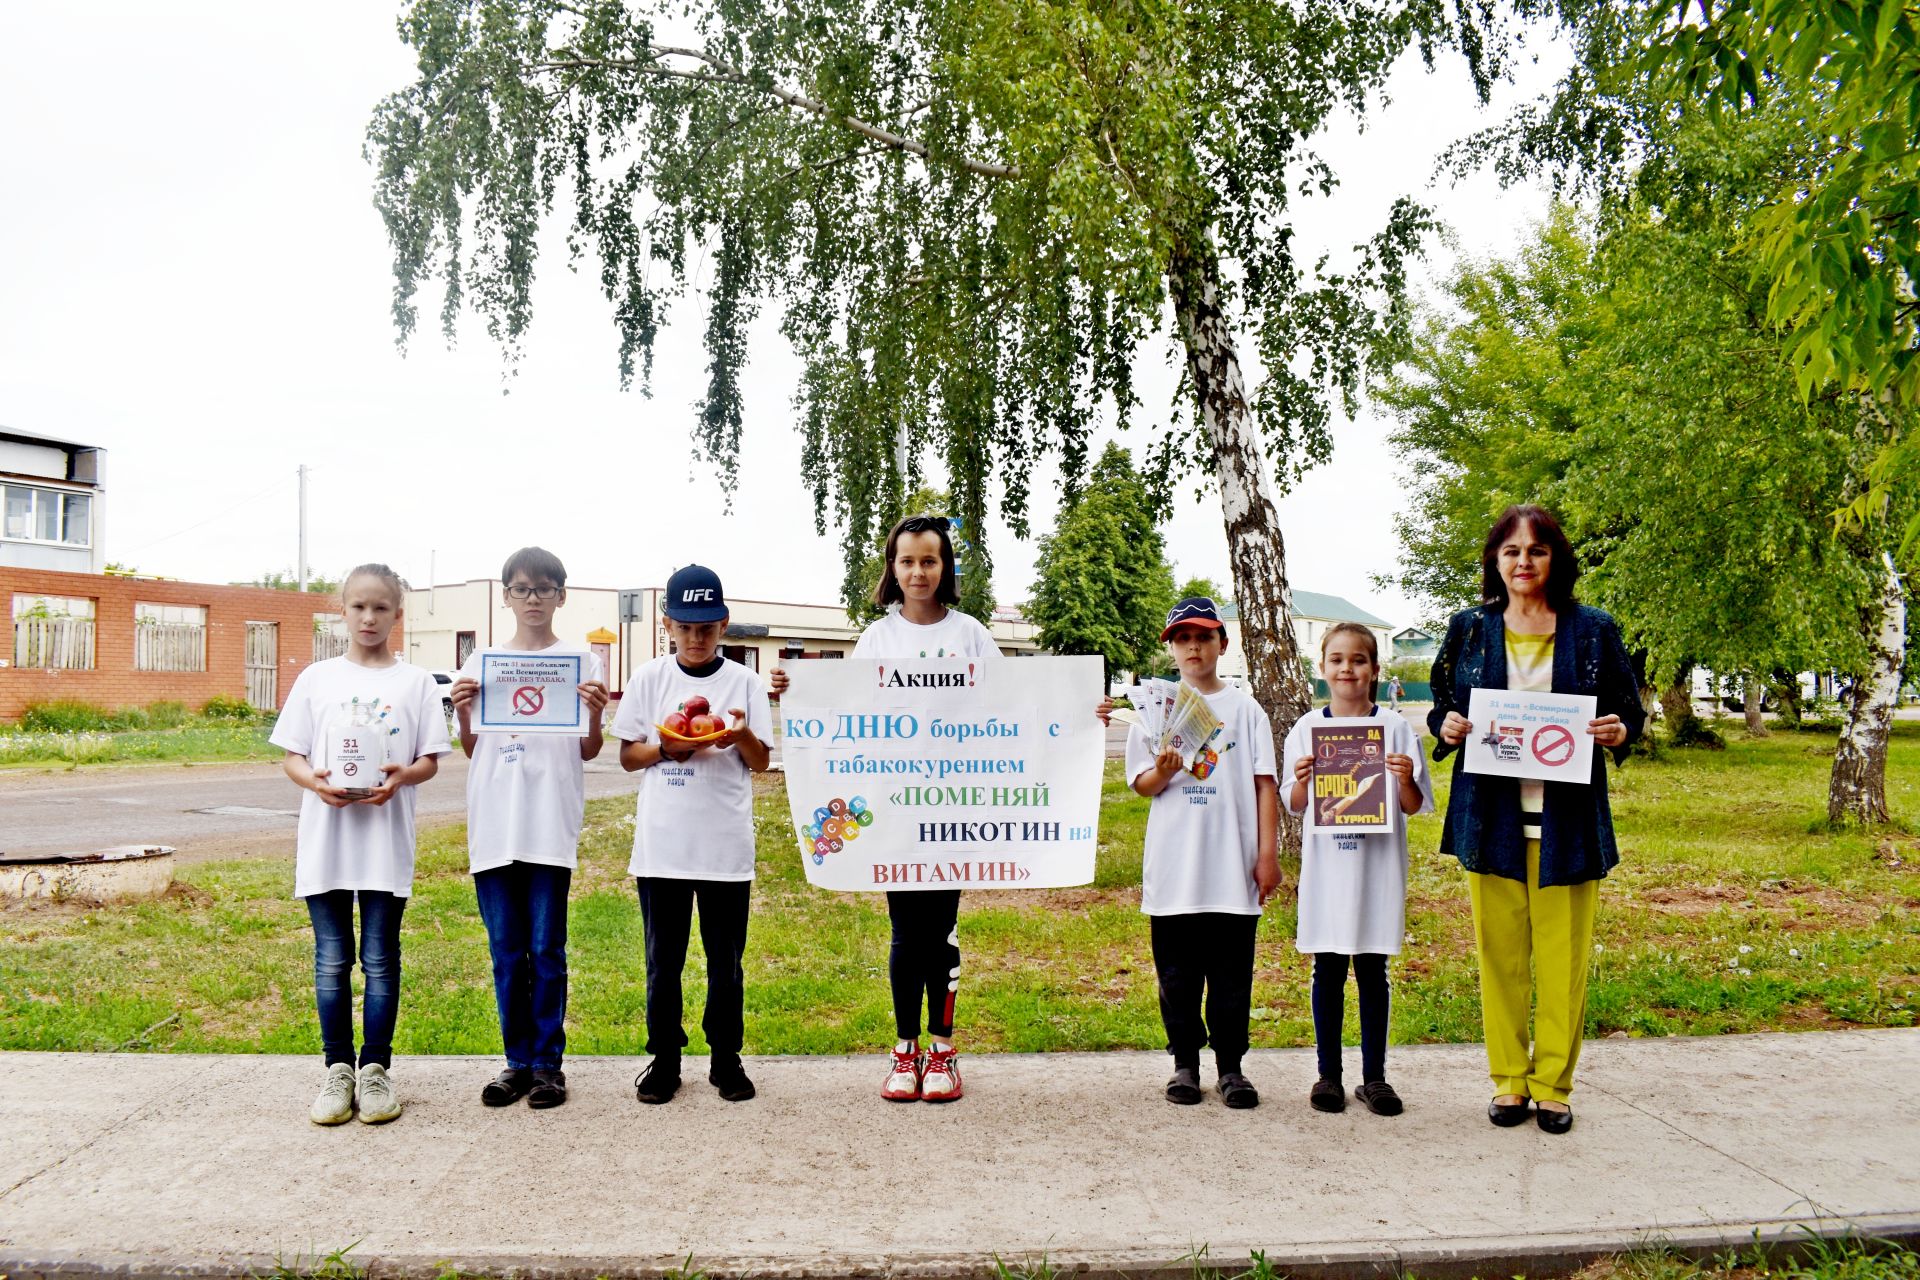 В поселке Татарстан прошла акция, посвященная Всемирному дню борьбы с табакокурением